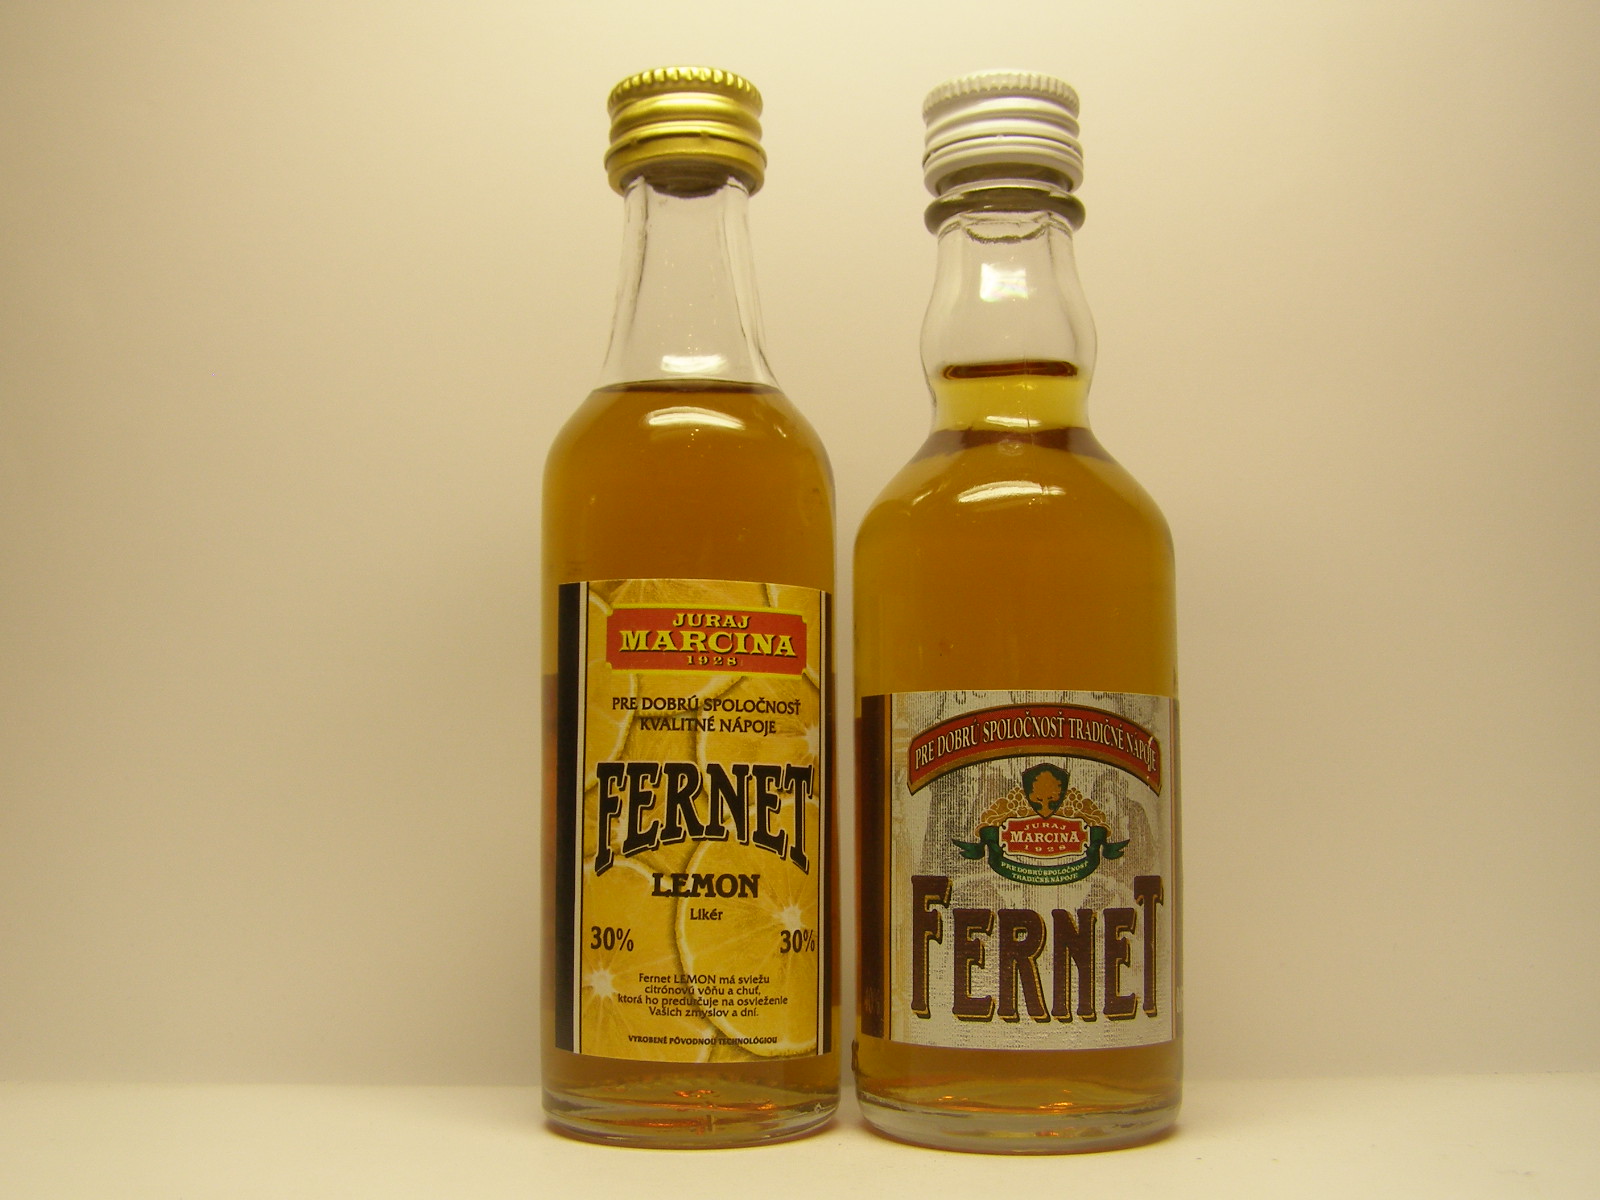 JURAJ MARCINA Fernet Lemon - Fernet